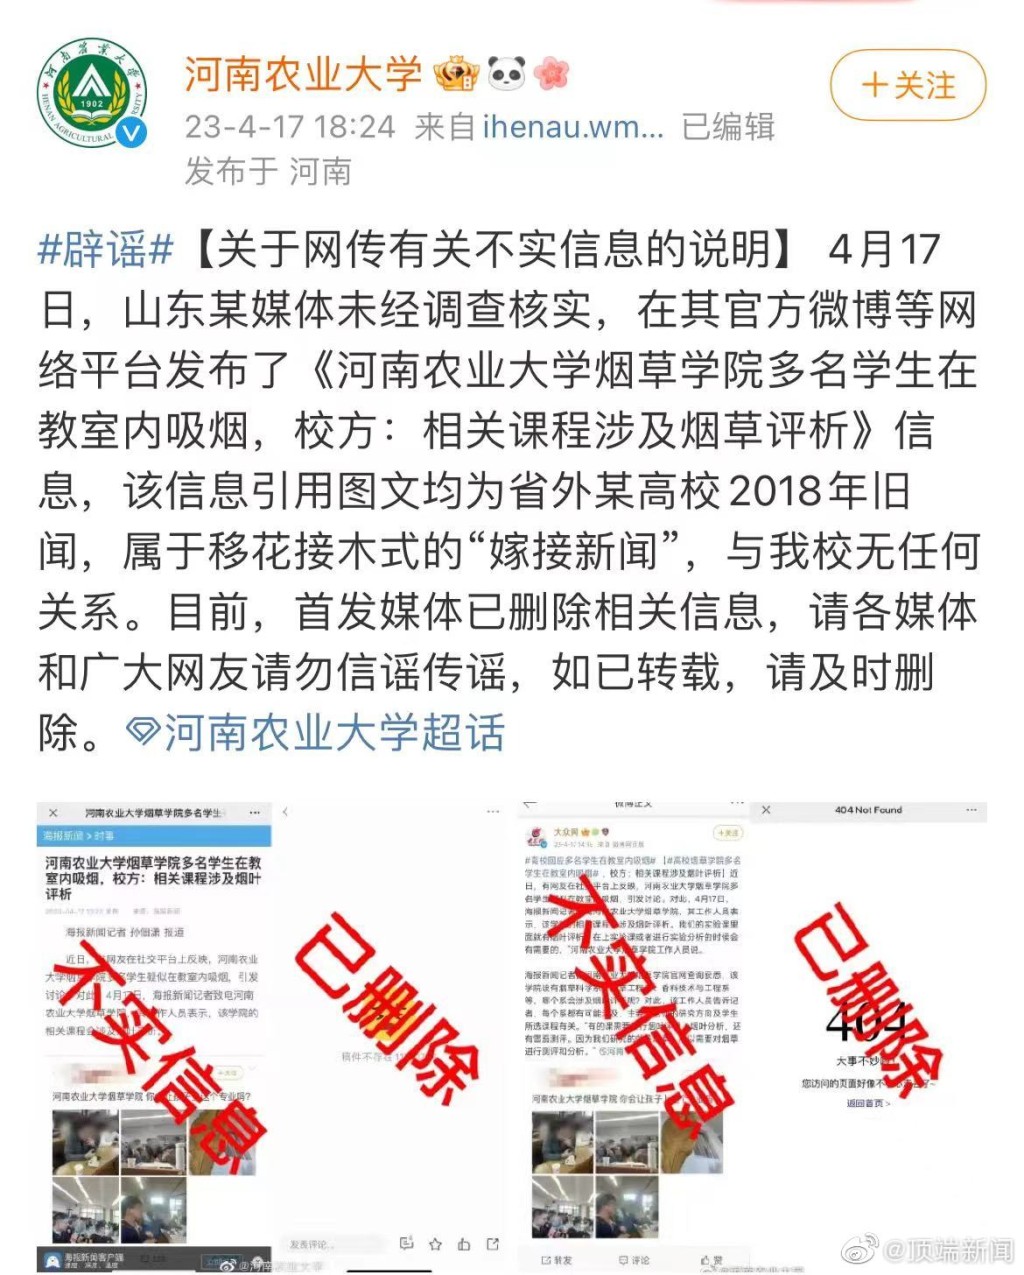 河南省农业大学辟谣，指事件与校方无关。 微博图